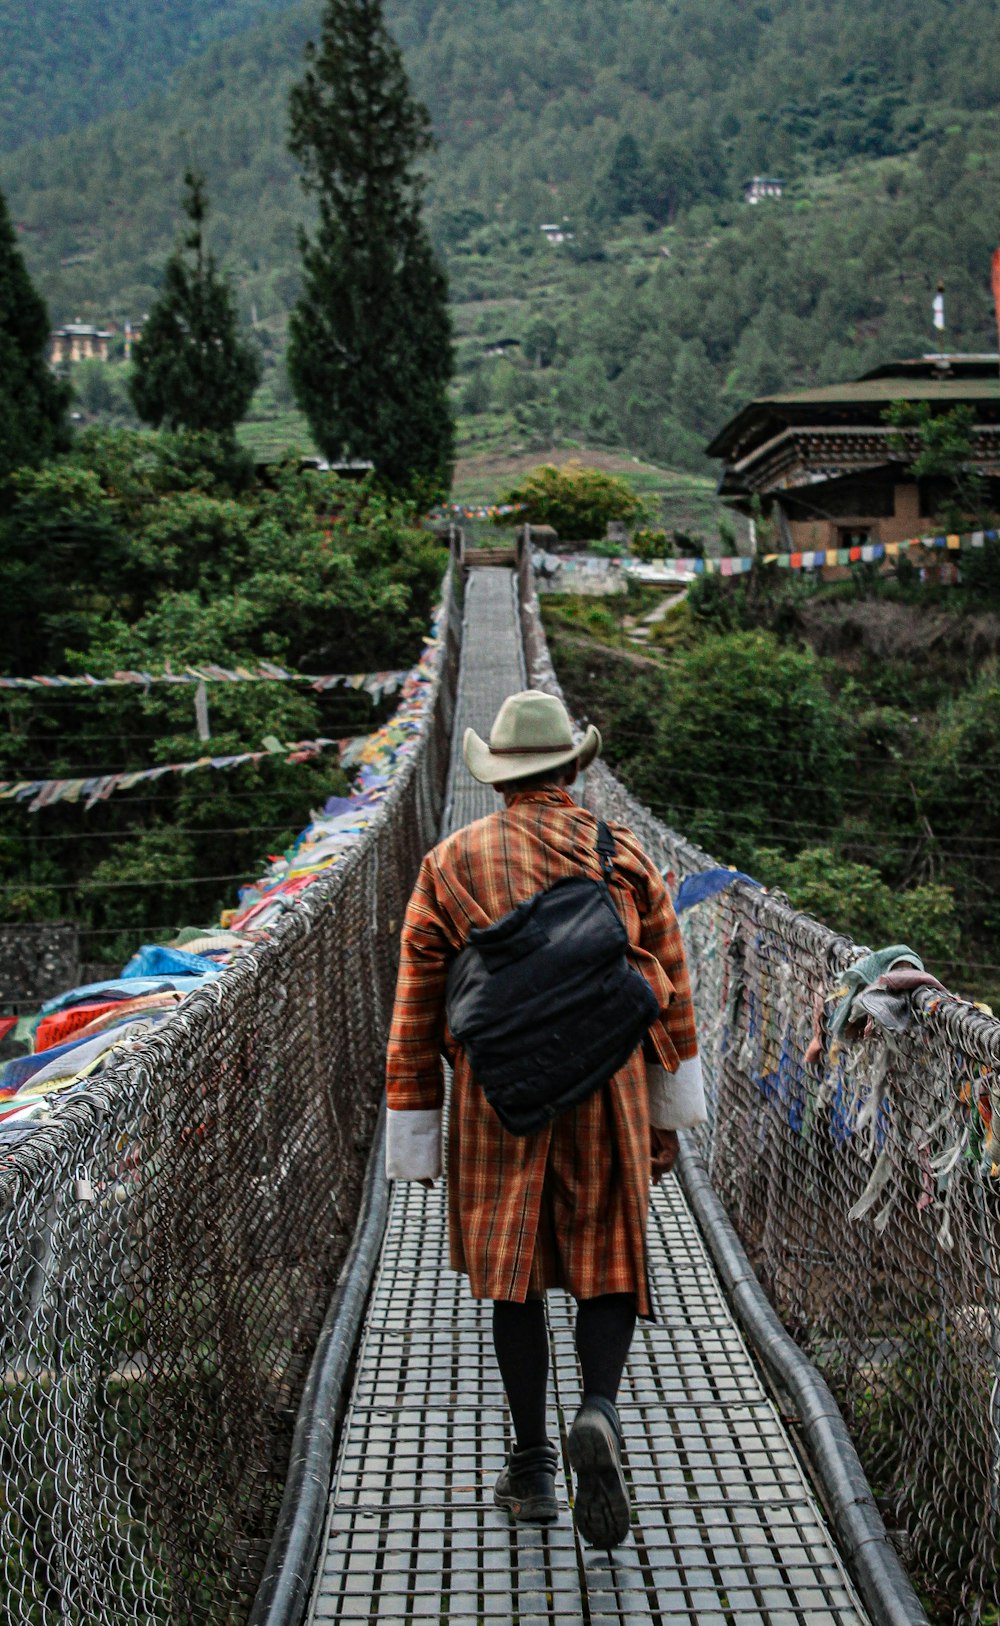 a person walking on a bridge